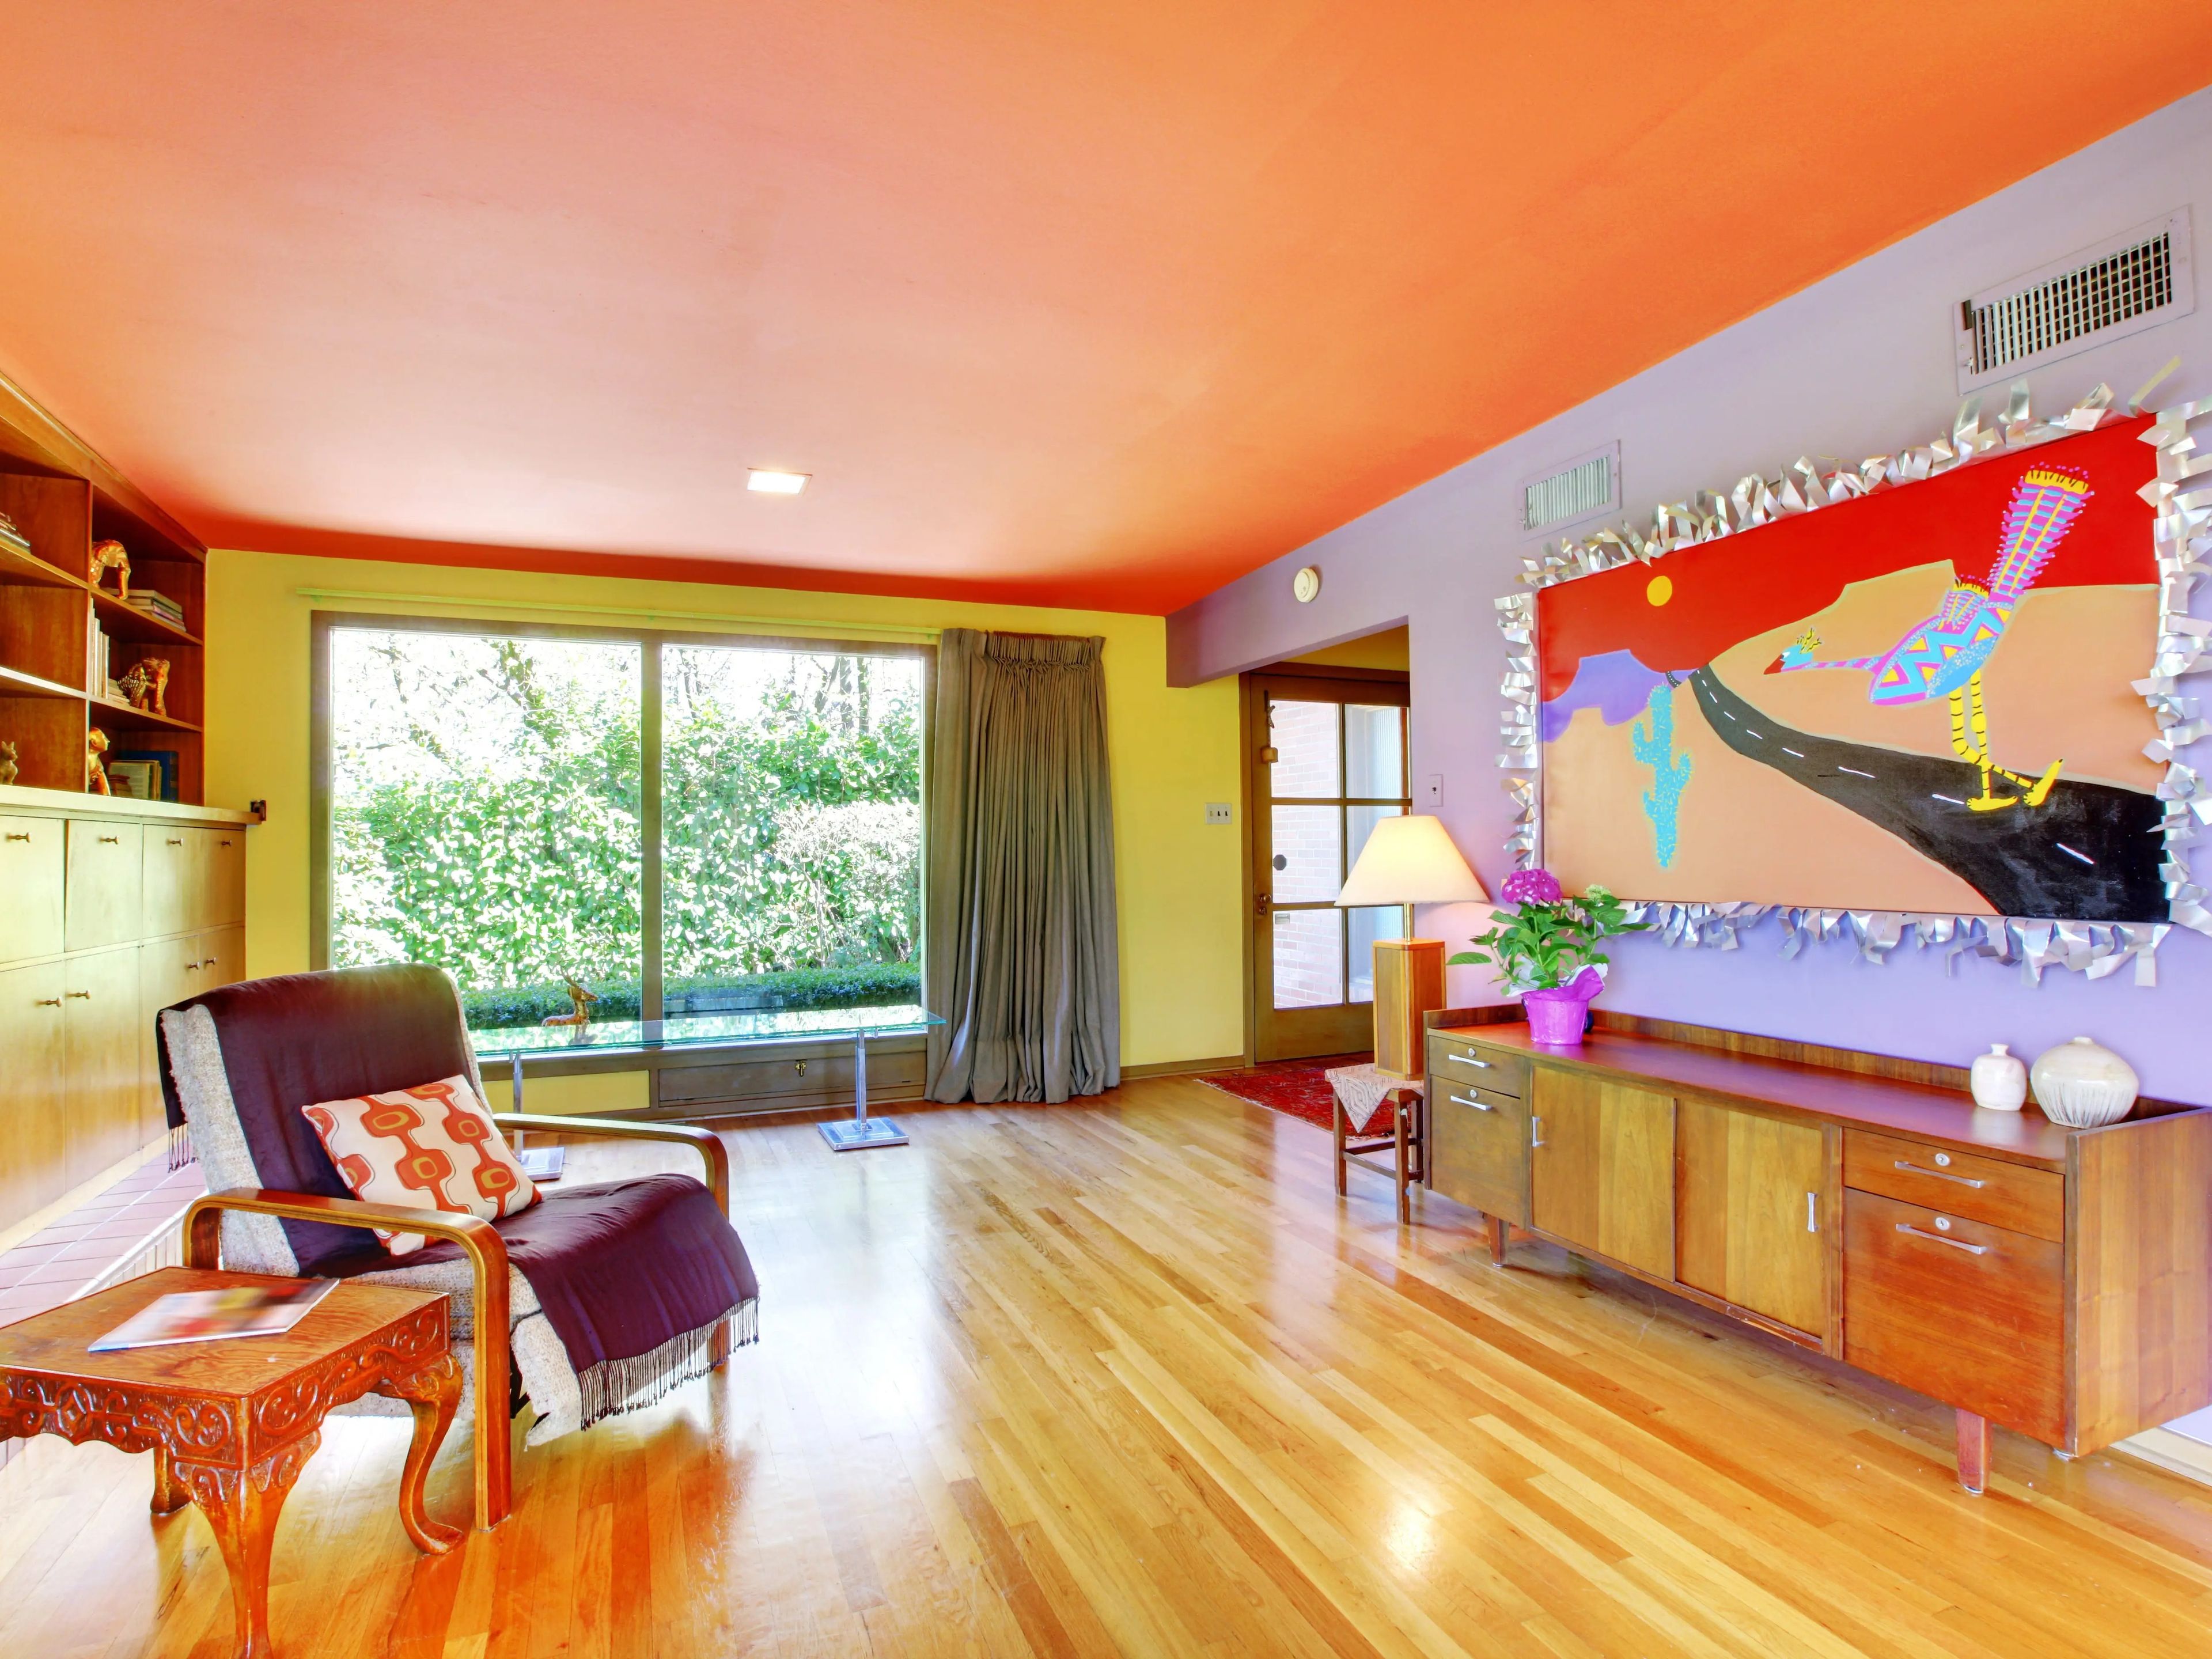 La generación Z utiliza colores llamativos en paredes, techos y decoración.